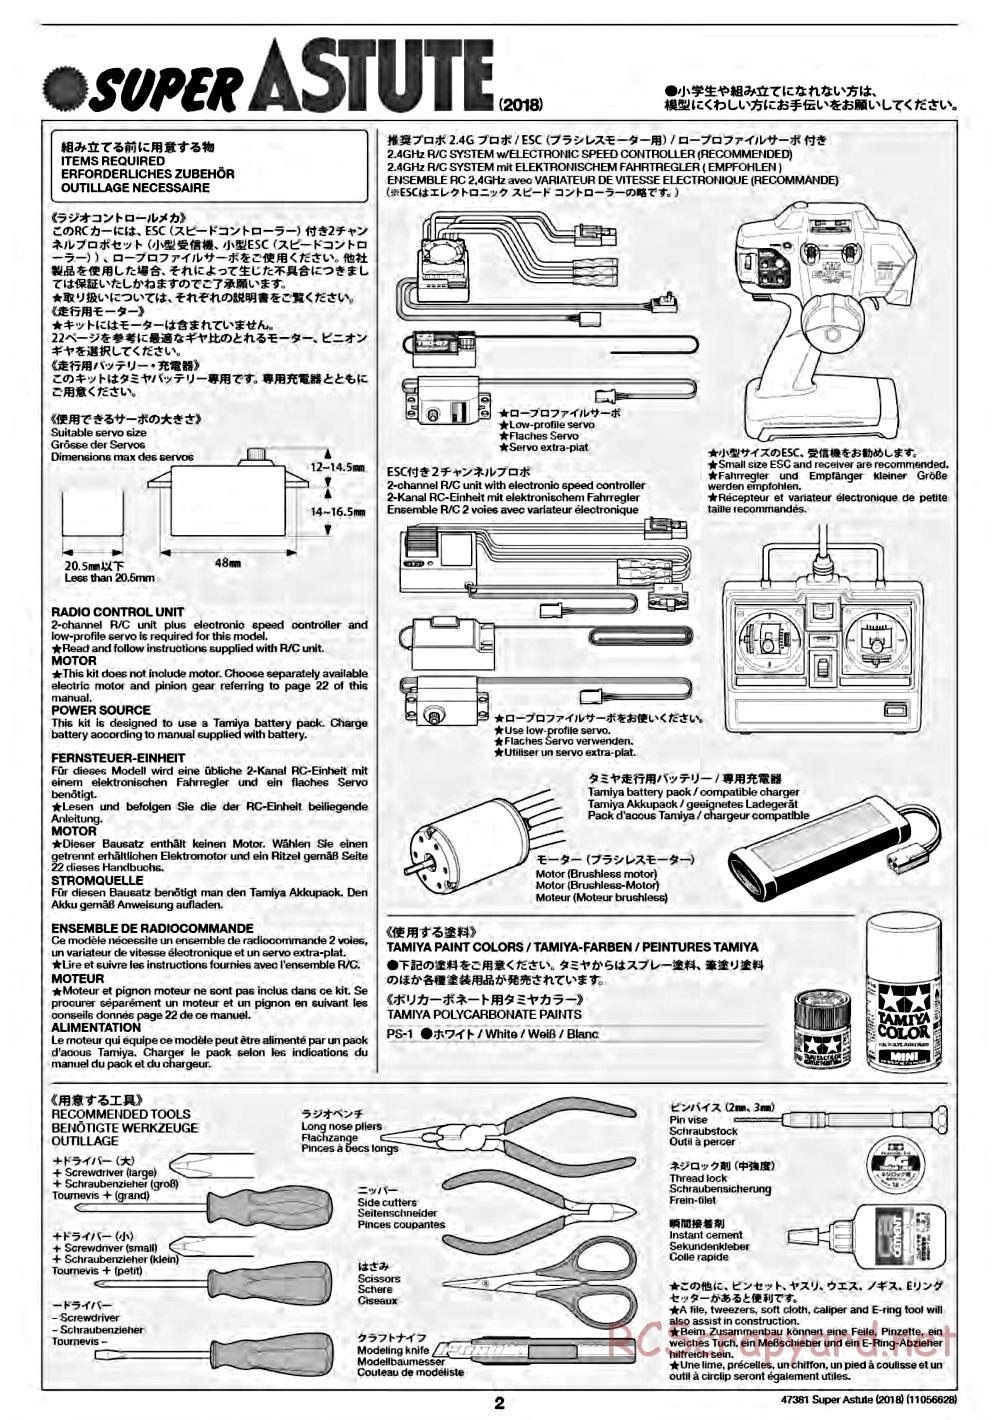 Tamiya - Super Astute (2018) Chassis - Manual - Page 2